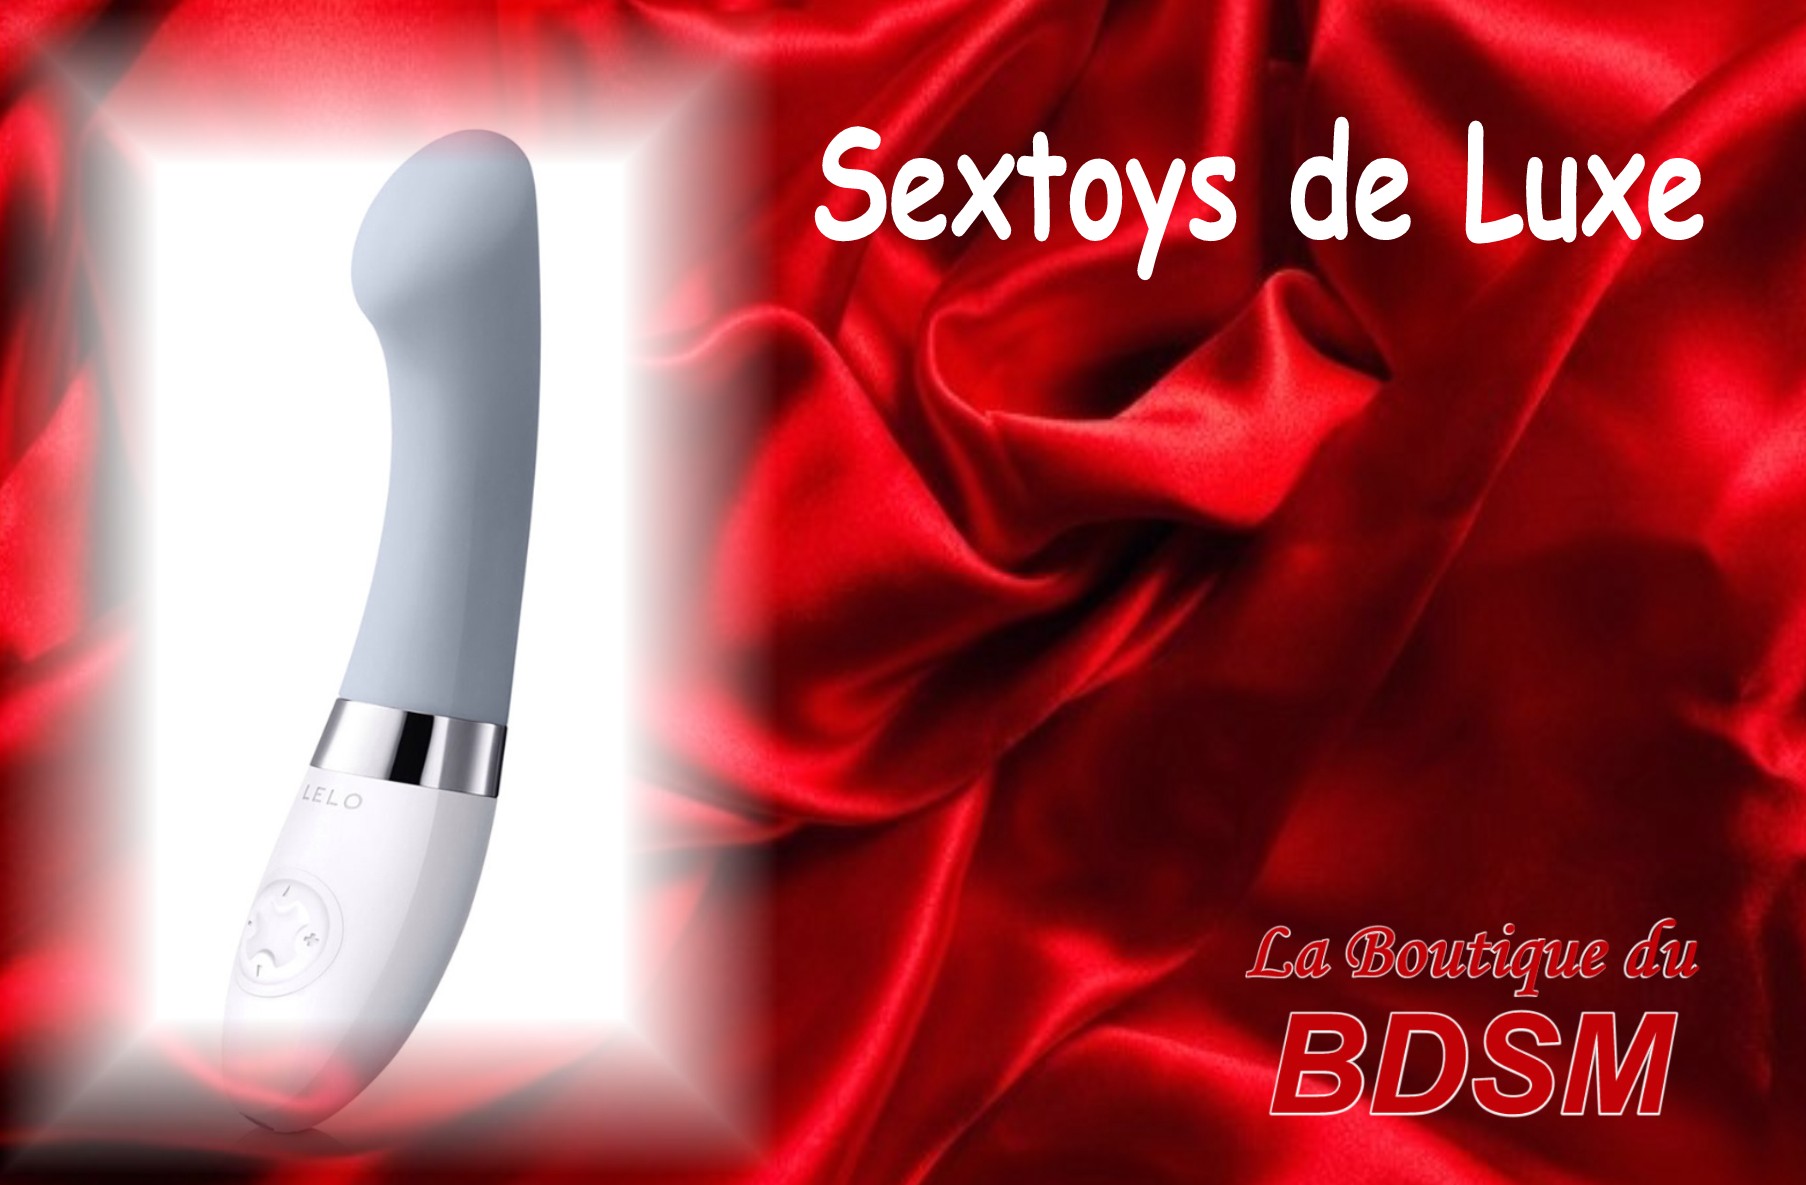 SEXTOYS DE LUXE MAINFONDS 16